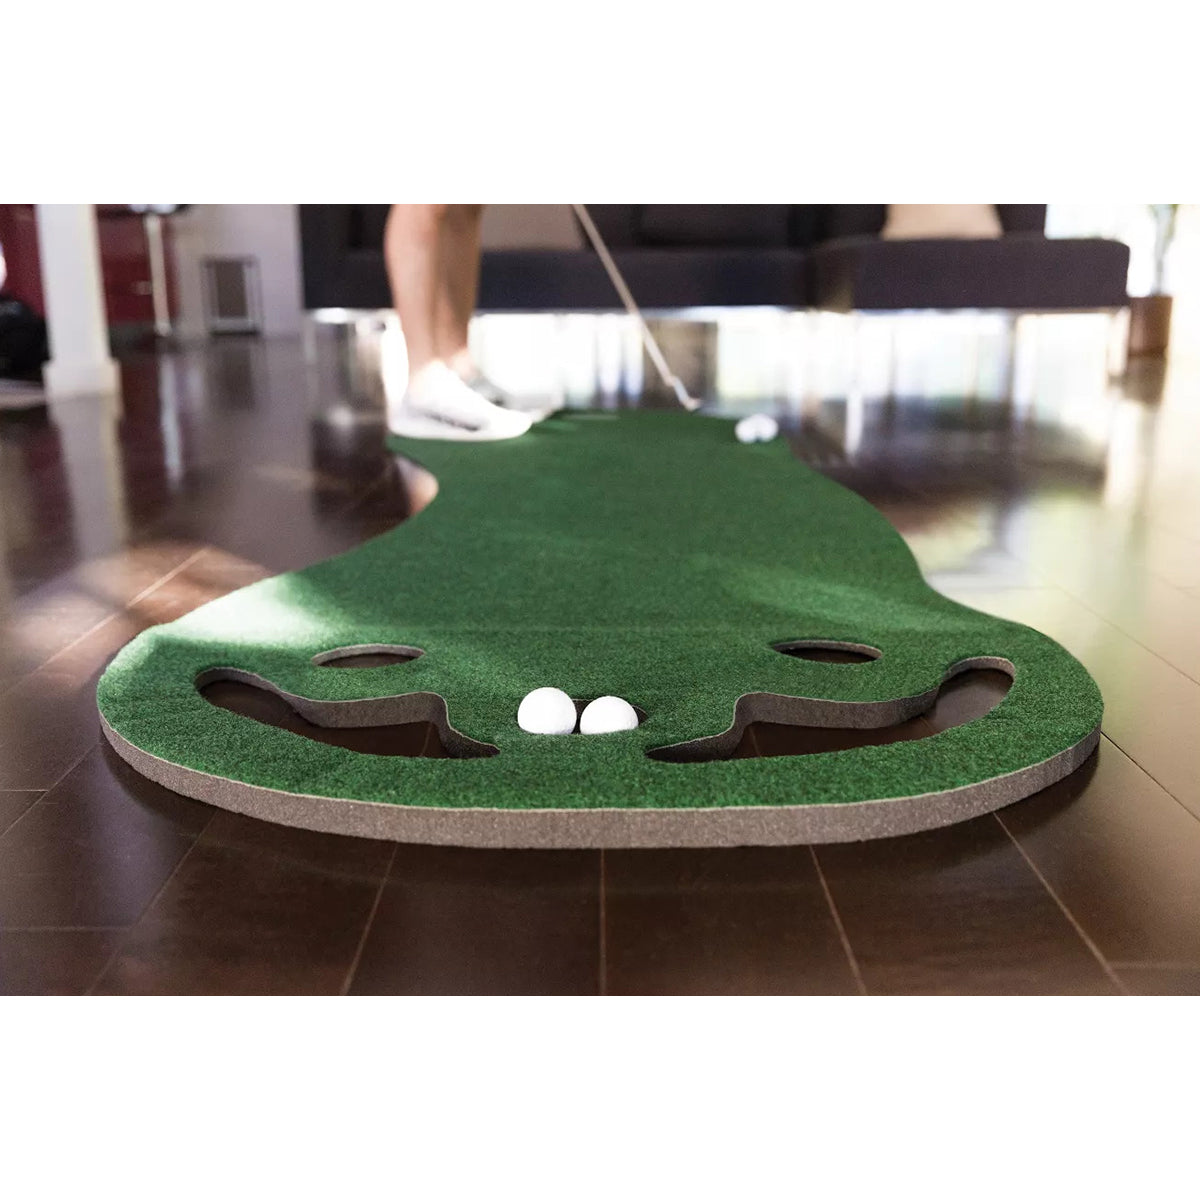 SKLZ Putting Green Indoor Golf Practice Mat - Green SKLZ